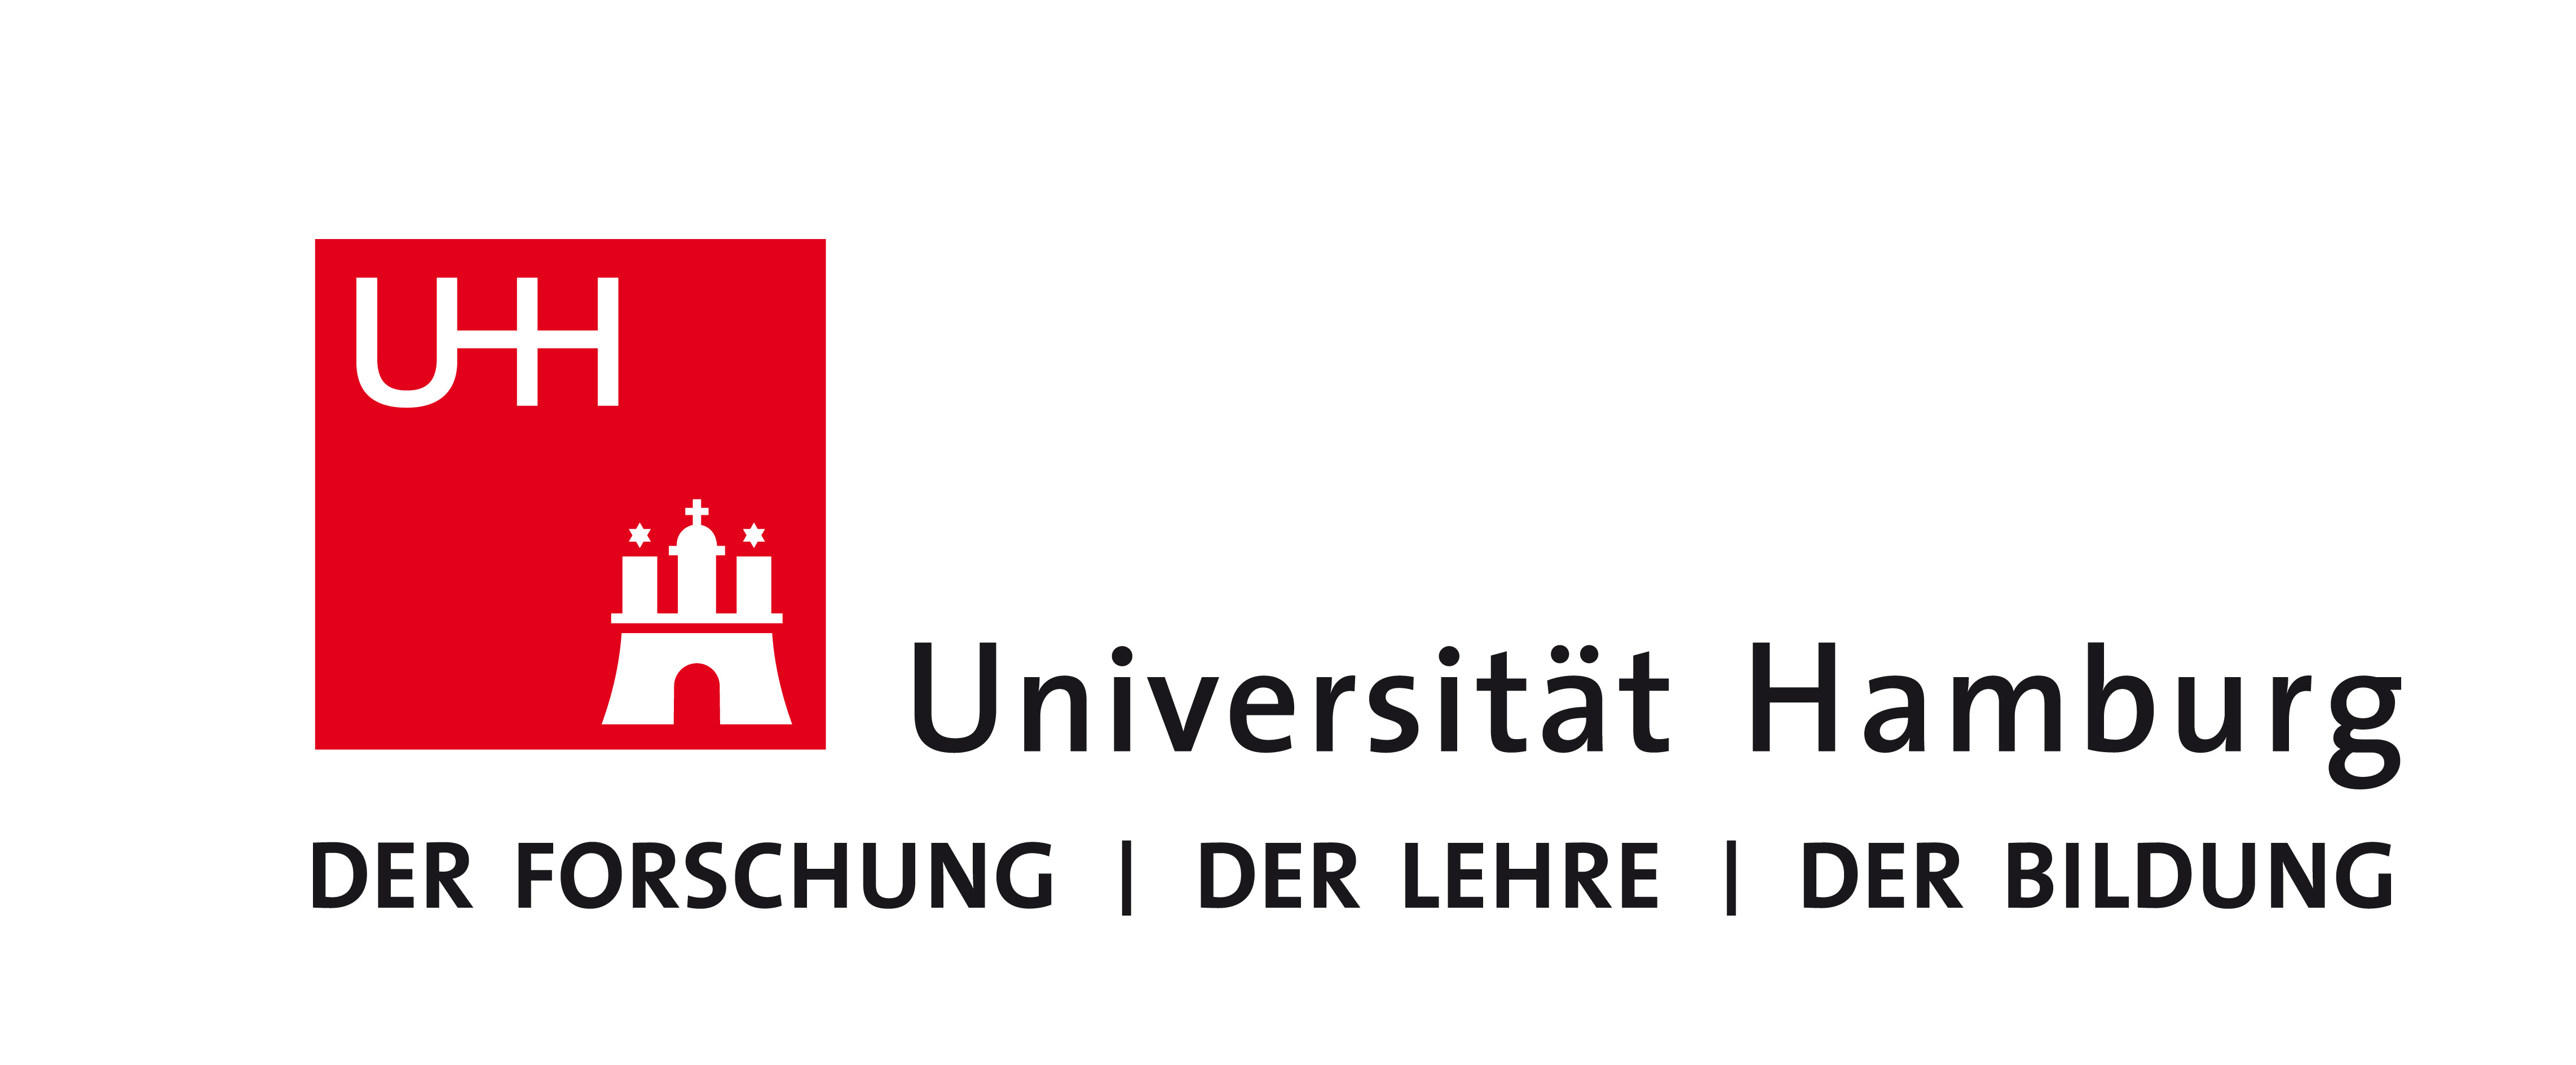 UHH Logo 2010 Farbe RGB small